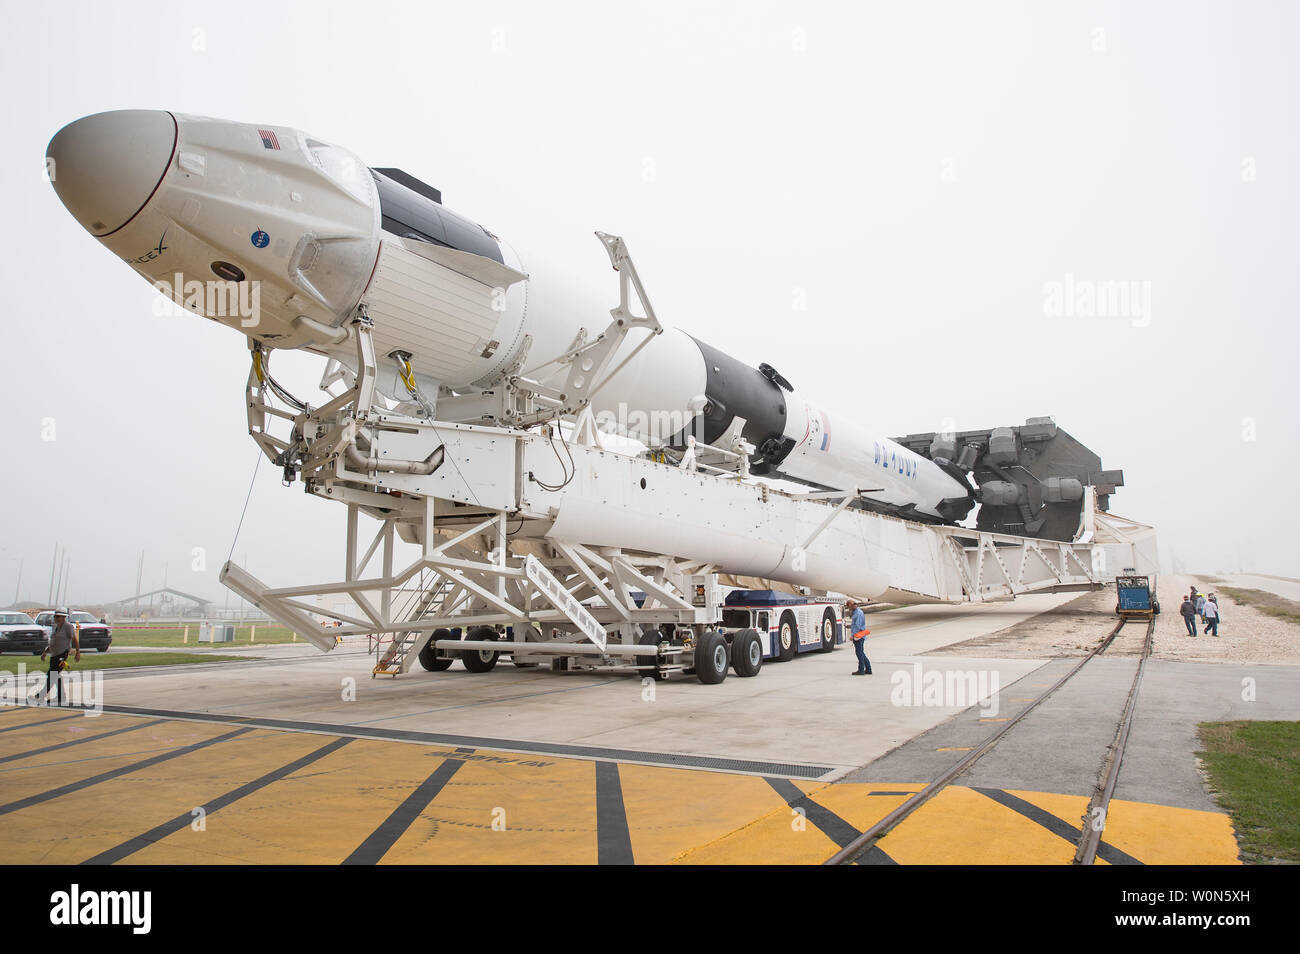 Un cohete SpaceX Falcon 9 con la empresa de la tripulación a bordo de la nave dragón es visto como se desenrolle del mecanismo de integración horizontal en el complejo de lanzamiento 39A medida que continúan los preparativos para la demostración-1 la misión, el 28 de febrero de 2019, en el Centro Espacial Kennedy en Florida. La Demo-1 misión será el primer lanzamiento de un construidas y explotadas comercialmente espaciales y naves espaciales americanos sistema diseñado para los seres humanos como parte del programa de tripulación comercial de la NASA. La misión, dirigida por un lanzamiento de 2:49am el 2 de marzo, sirva de principio a fin una prueba de la capacidad del sistema. Foto de la NASA por Joel K Foto de stock